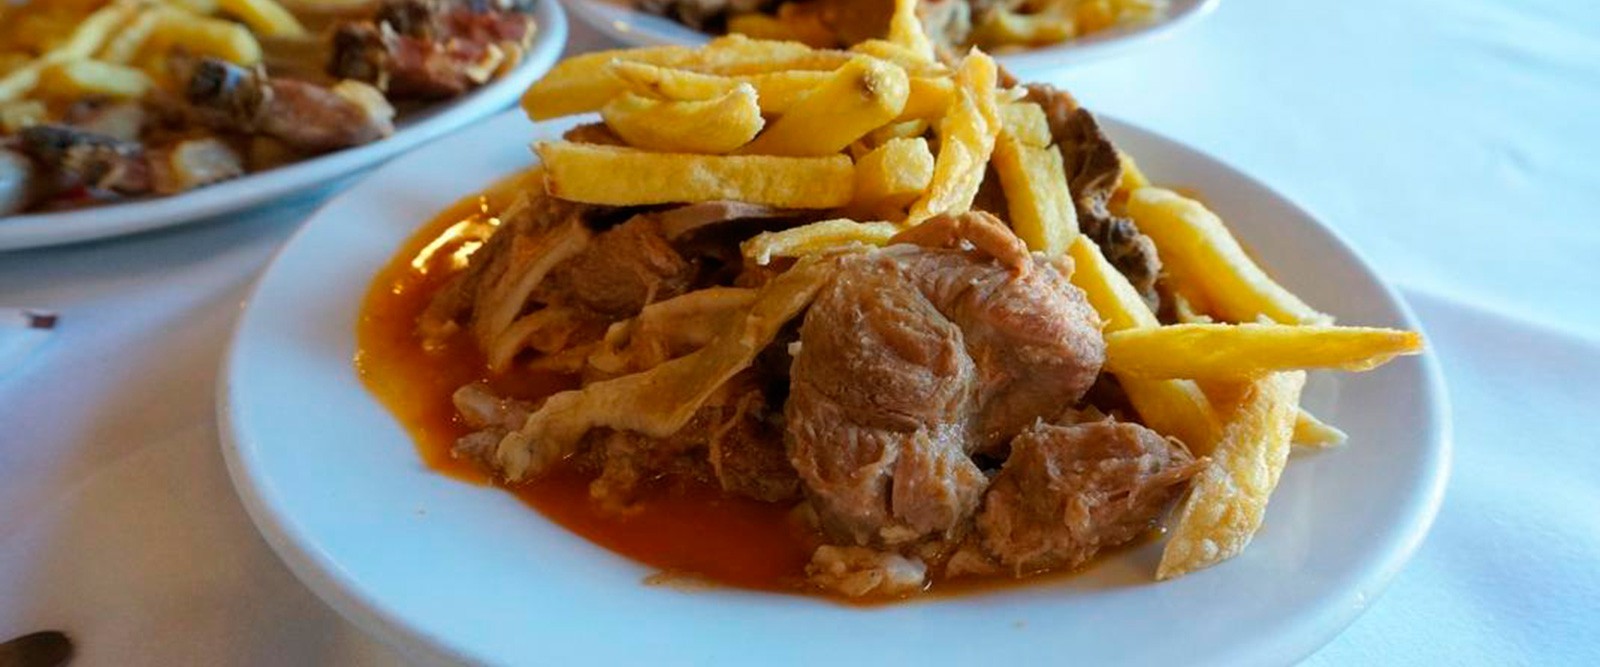 Carne guisada - Restaurante El Soportal en Pedraza, Segovia